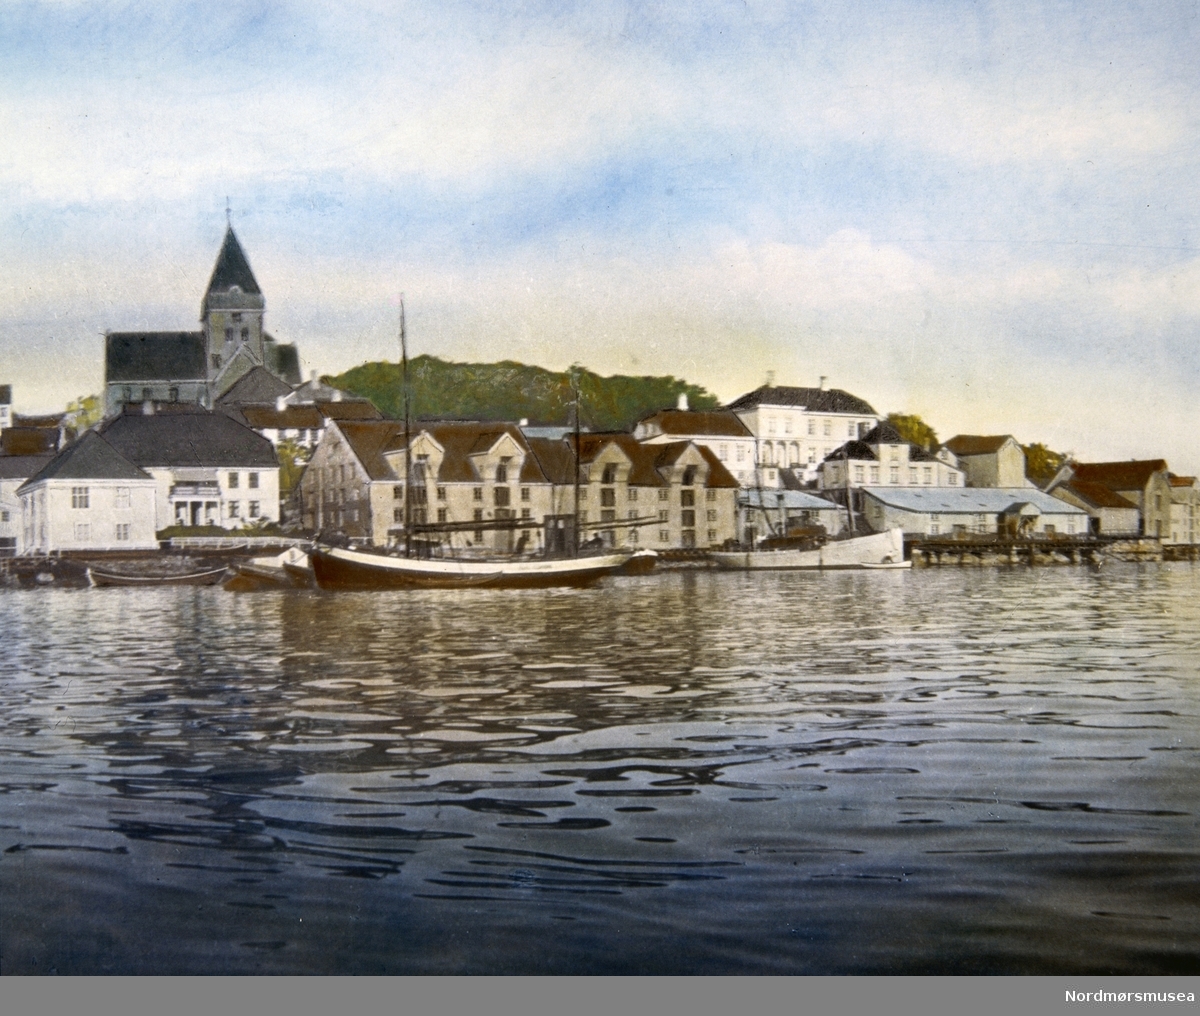 Tegning fra Nordlandet i Kristiansund, med bygninger langs havnekanten. Fra Nordmøre museums fotosamlinger.